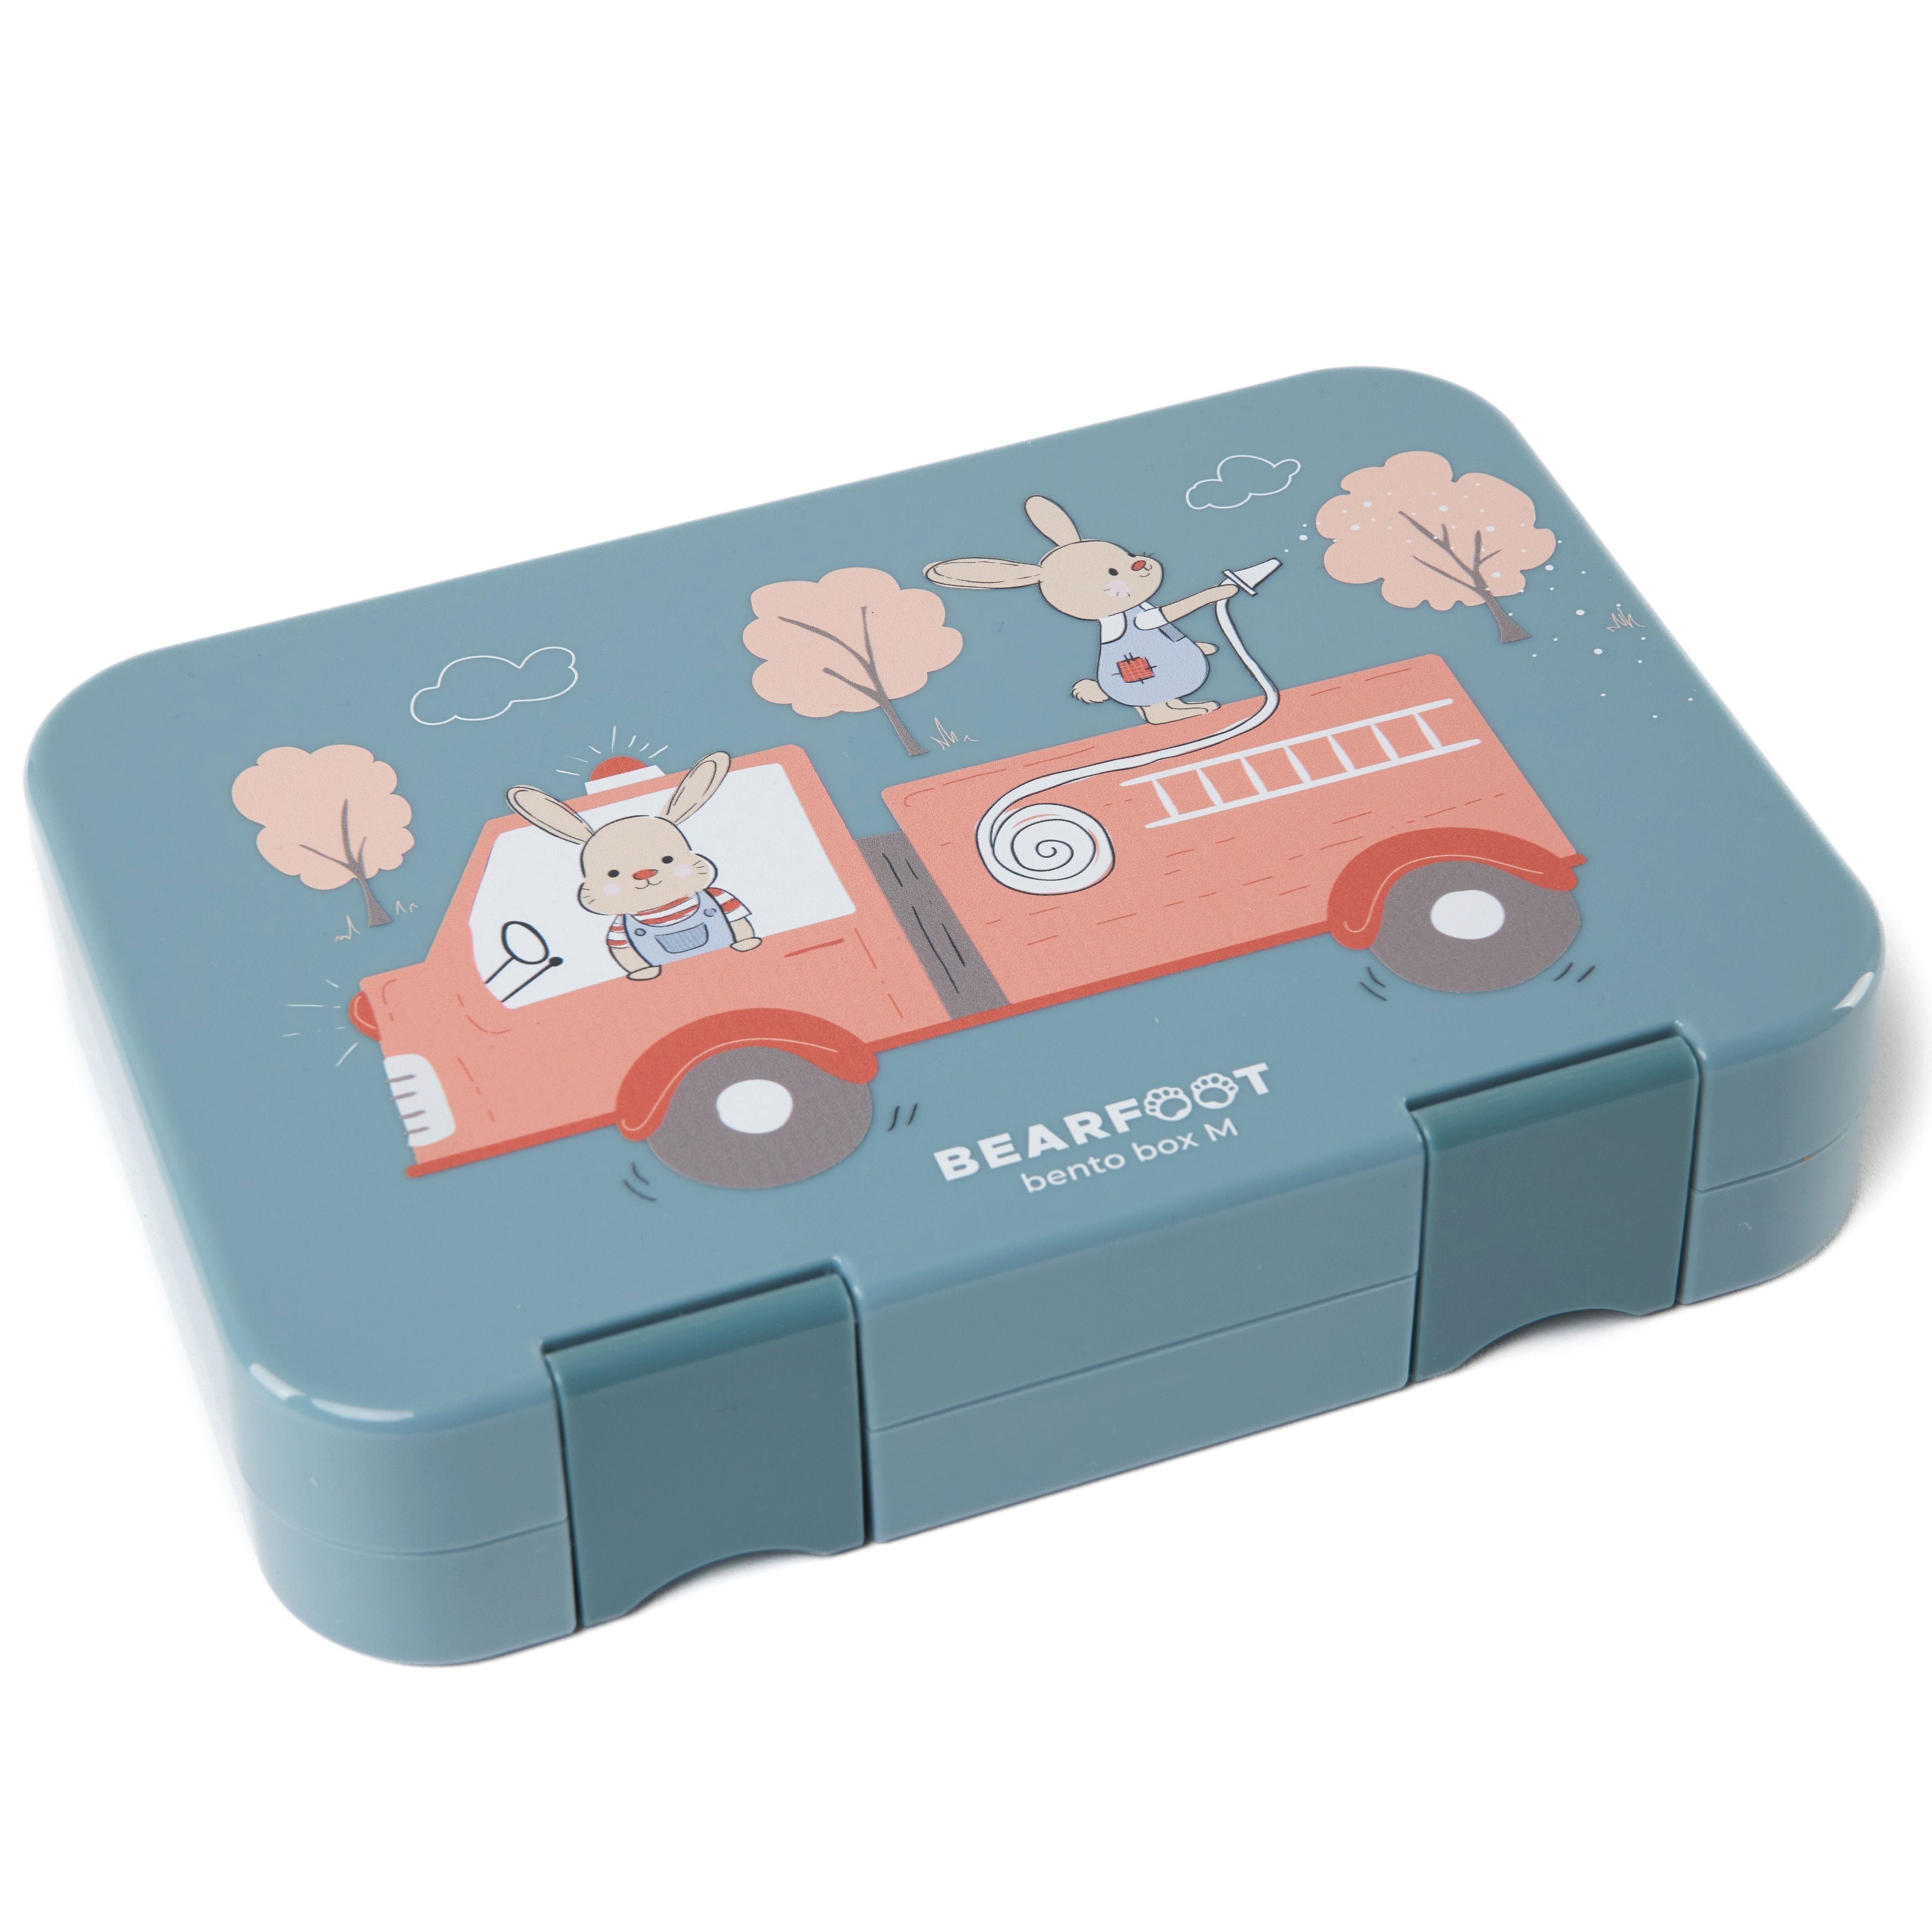 BEARFOOT Lunchbox mit Bento Designs, Feuerwehrhasen-blau Fächern, Brotdose box - modular Lunchbox, Feuerwehr, Kinder handgezeichnete